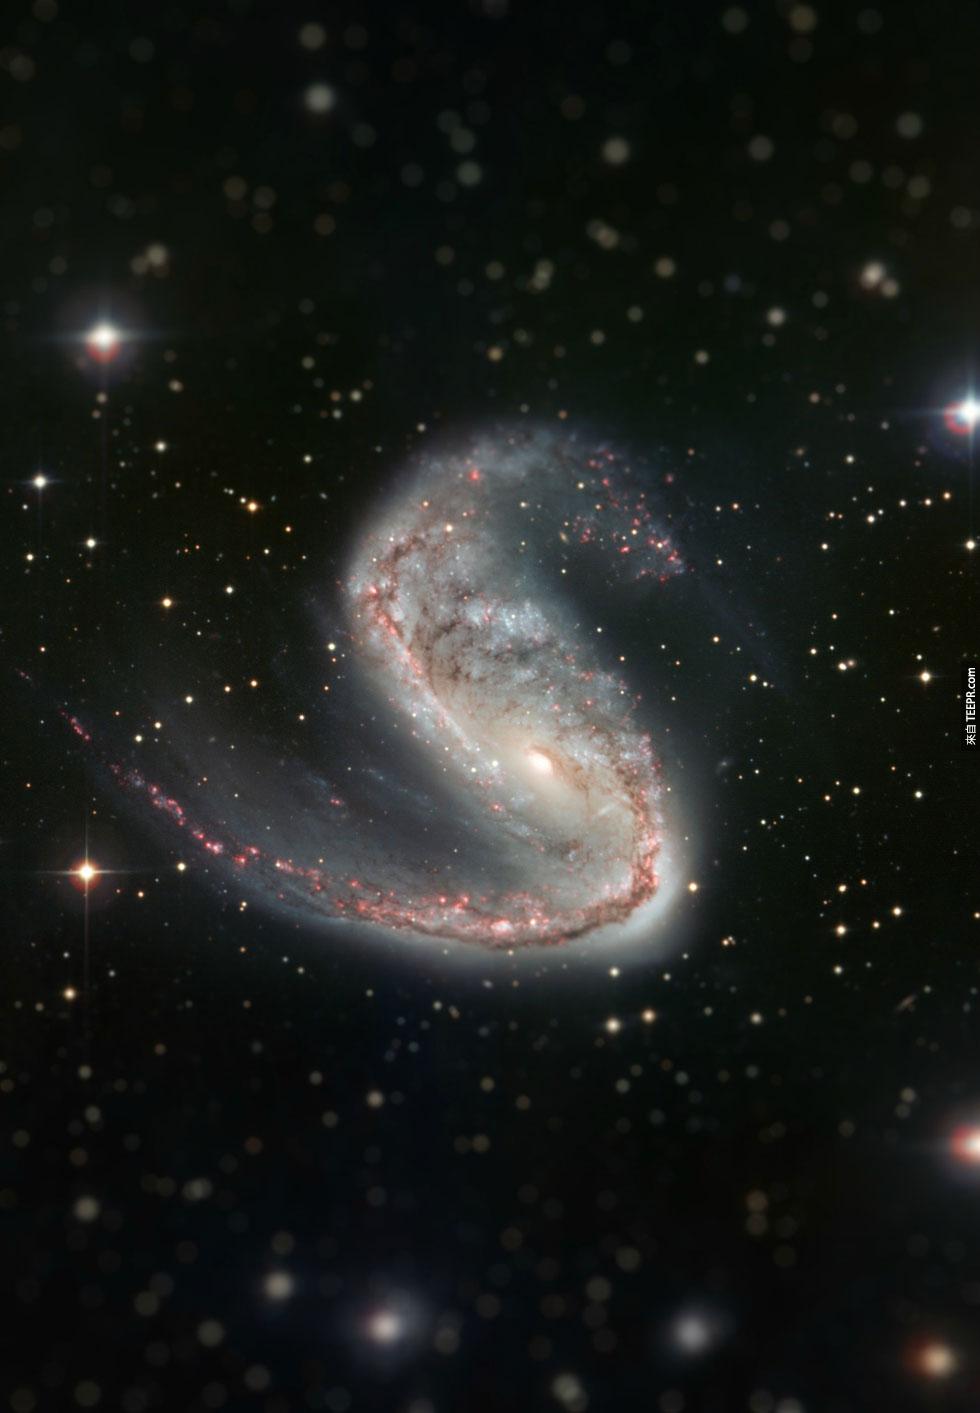 4. 肉钩星系 (Meathook Galaxy)